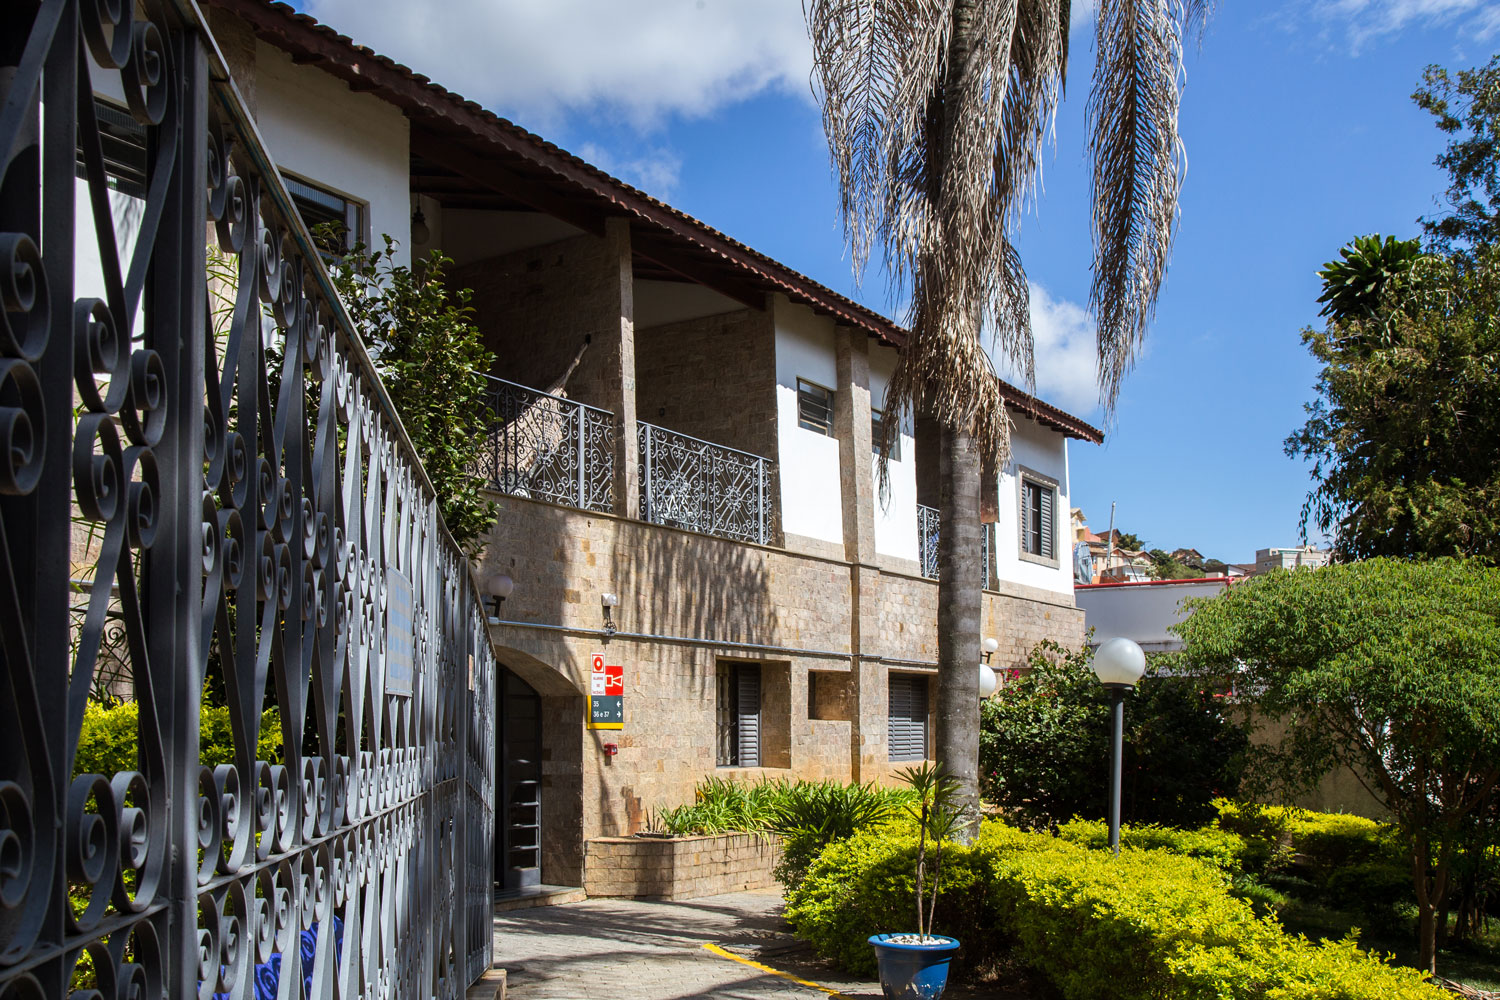 Sesc Ouro Preto e Sesc Poços de Caldas recebem o prêmio Travellers Choice